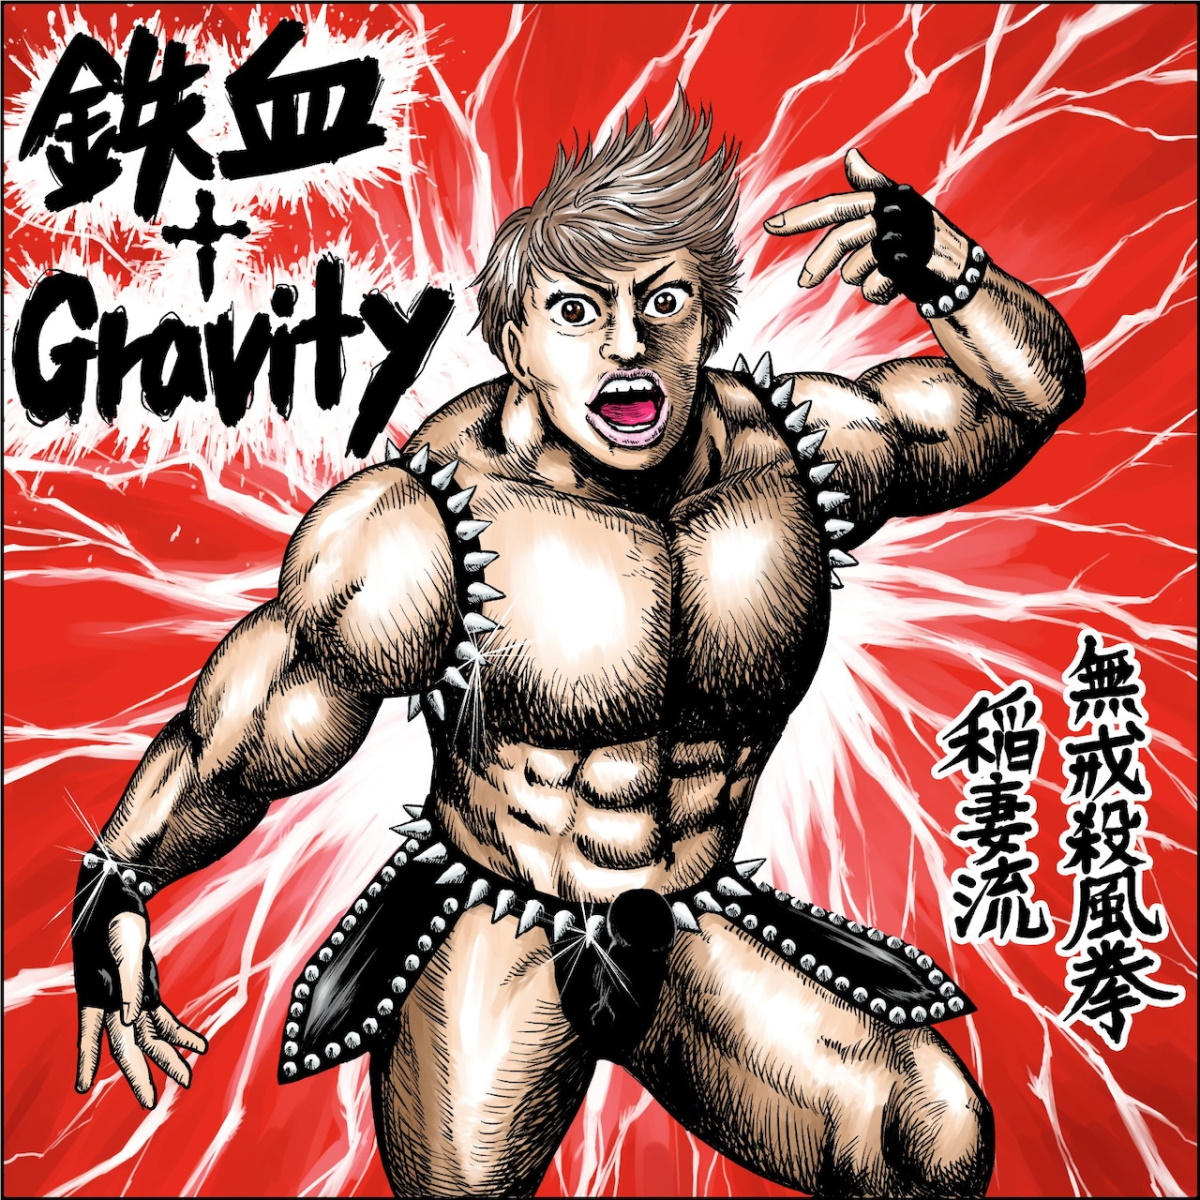 Cover for『Takanori Nishikawa featuring Momoiro Clover Z - Tekketsu † Gravity』from the release『Tekketsu † Gravity』